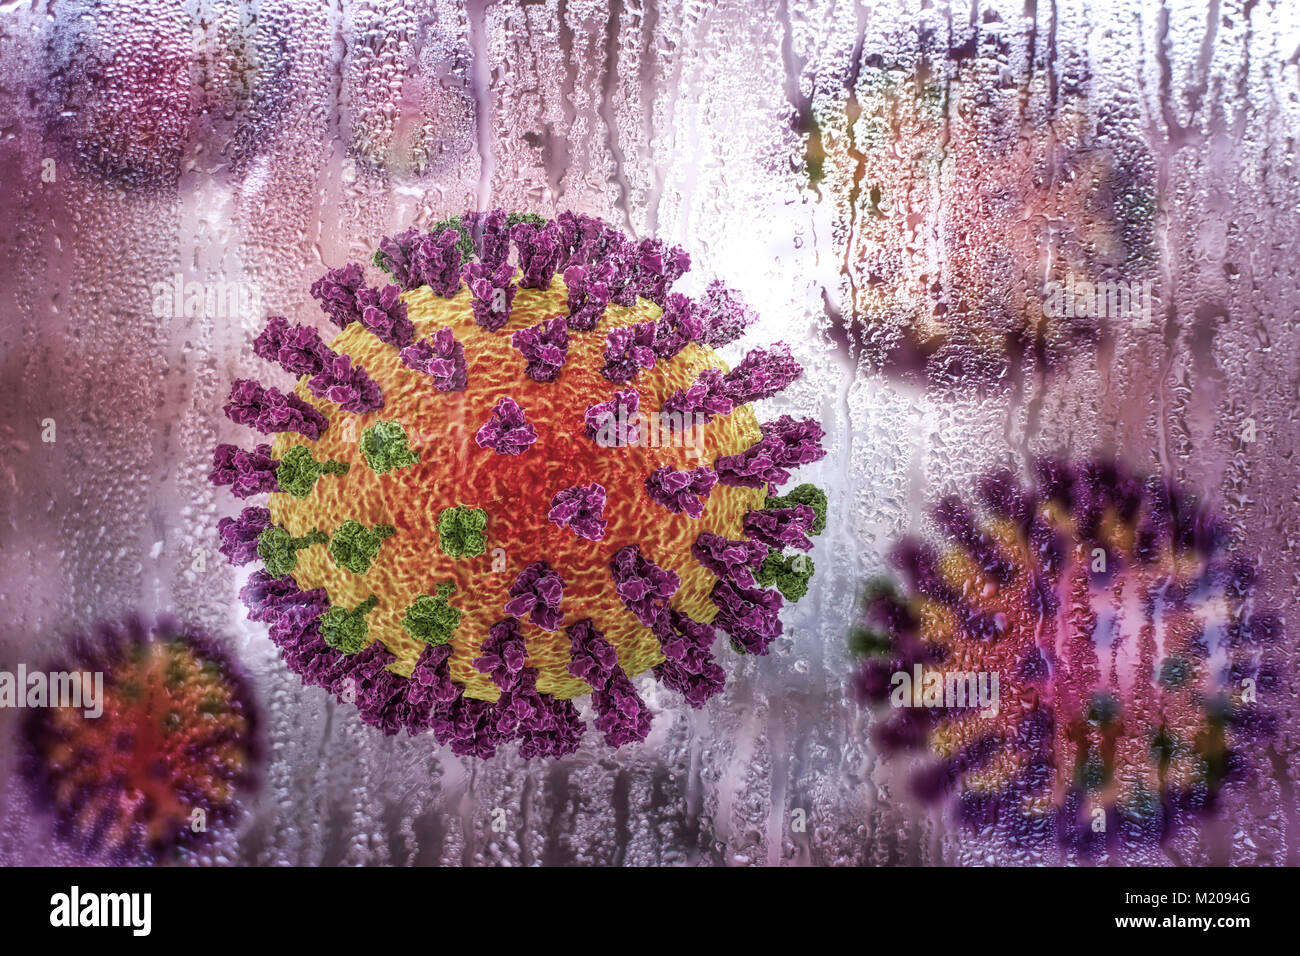 Los virus de la gripe,Ilustración conceptual demostrando carácter estacional de las infecciones respiratorias con el aumento de la incidencia de la gripe en frío lluvioso.Cada virus consta de un núcleo de ARN (ácido ribonucleico) material genético rodeado por una capa de proteína (naranja).incrustado en el escudo son proteínas de superficie (picos).Hay dos tipos de proteínas de superficie, hemaglutinina (púrpura) y la neuraminidasa (verde),y cada uno existe en varios subtipos.ambas proteínas superficiales están asociadas con la patogenicidad del virus.la hemaglutinina se une a las células del huésped, permitiendo que el virus entre ellos Foto de stock